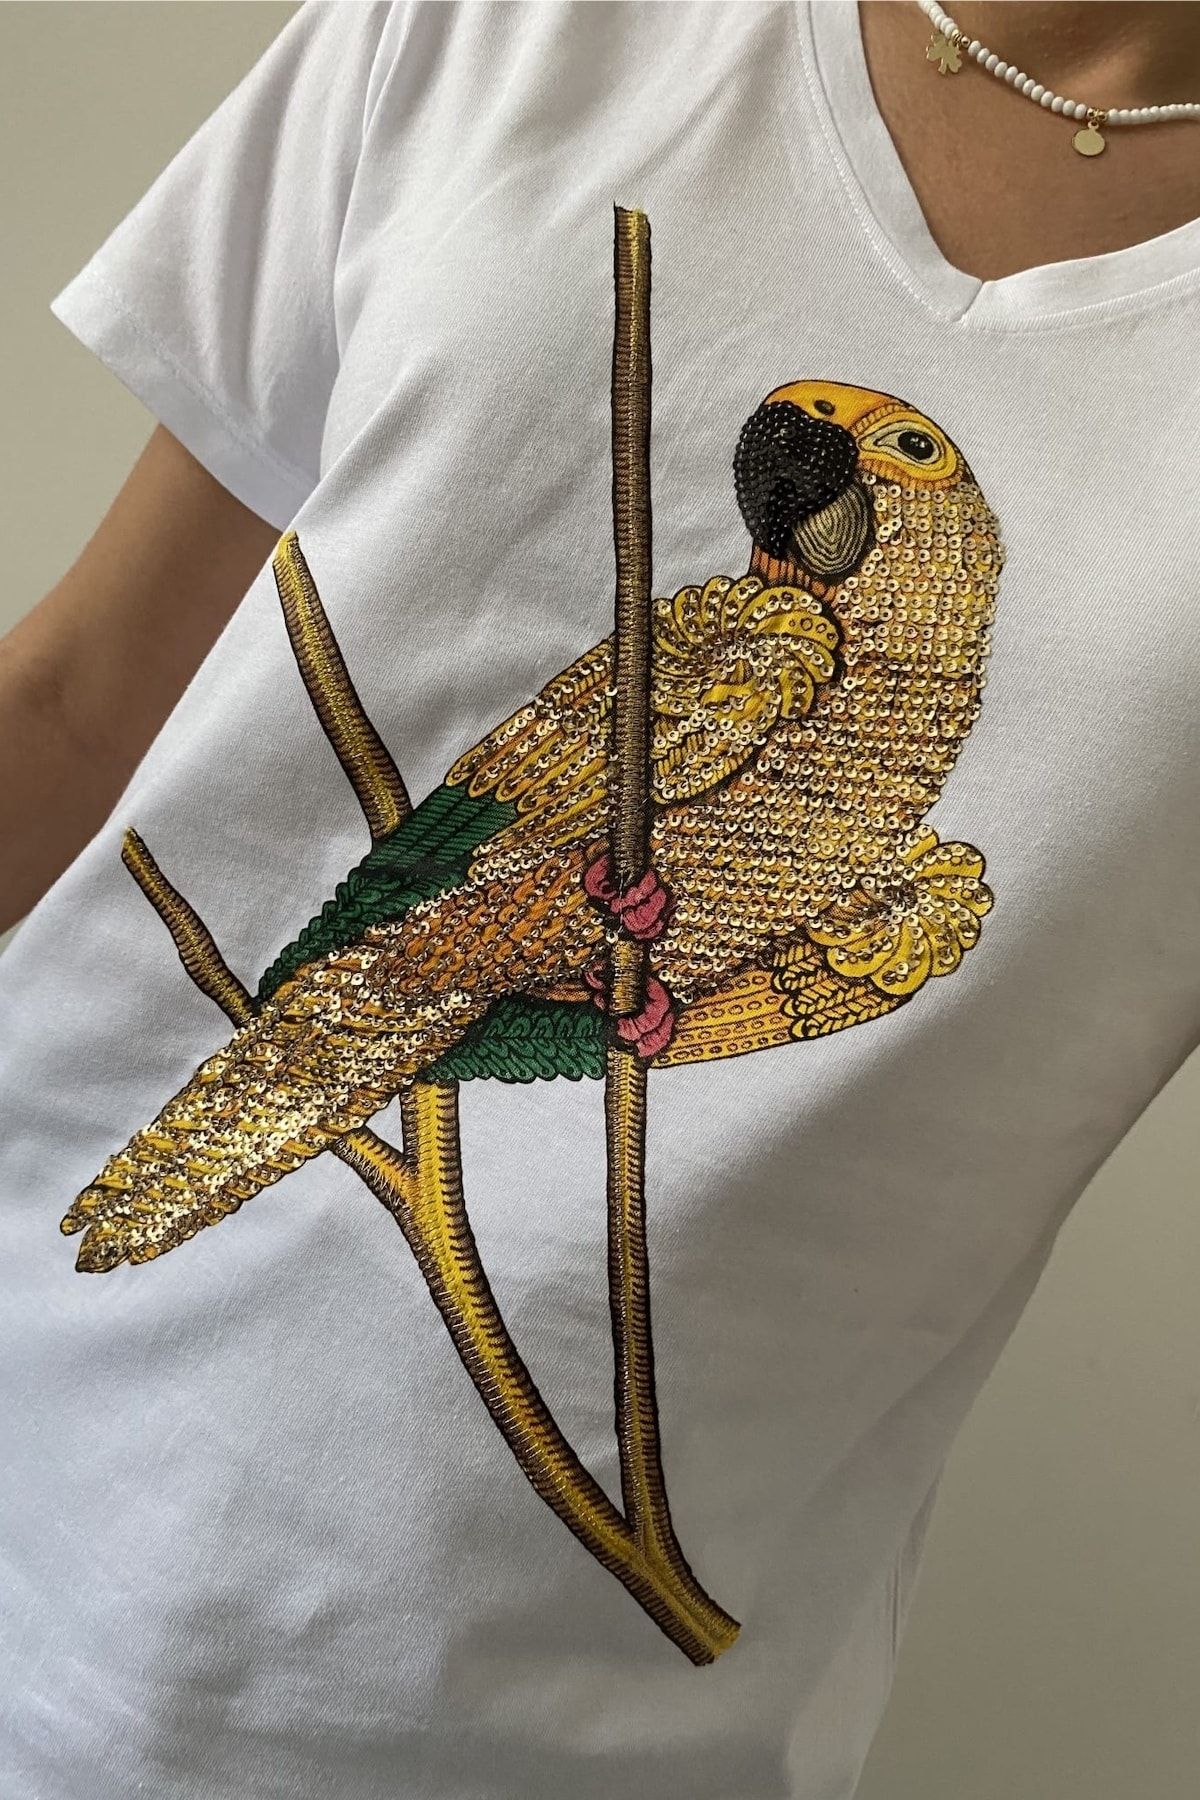 Leggings – The Gold Parrot